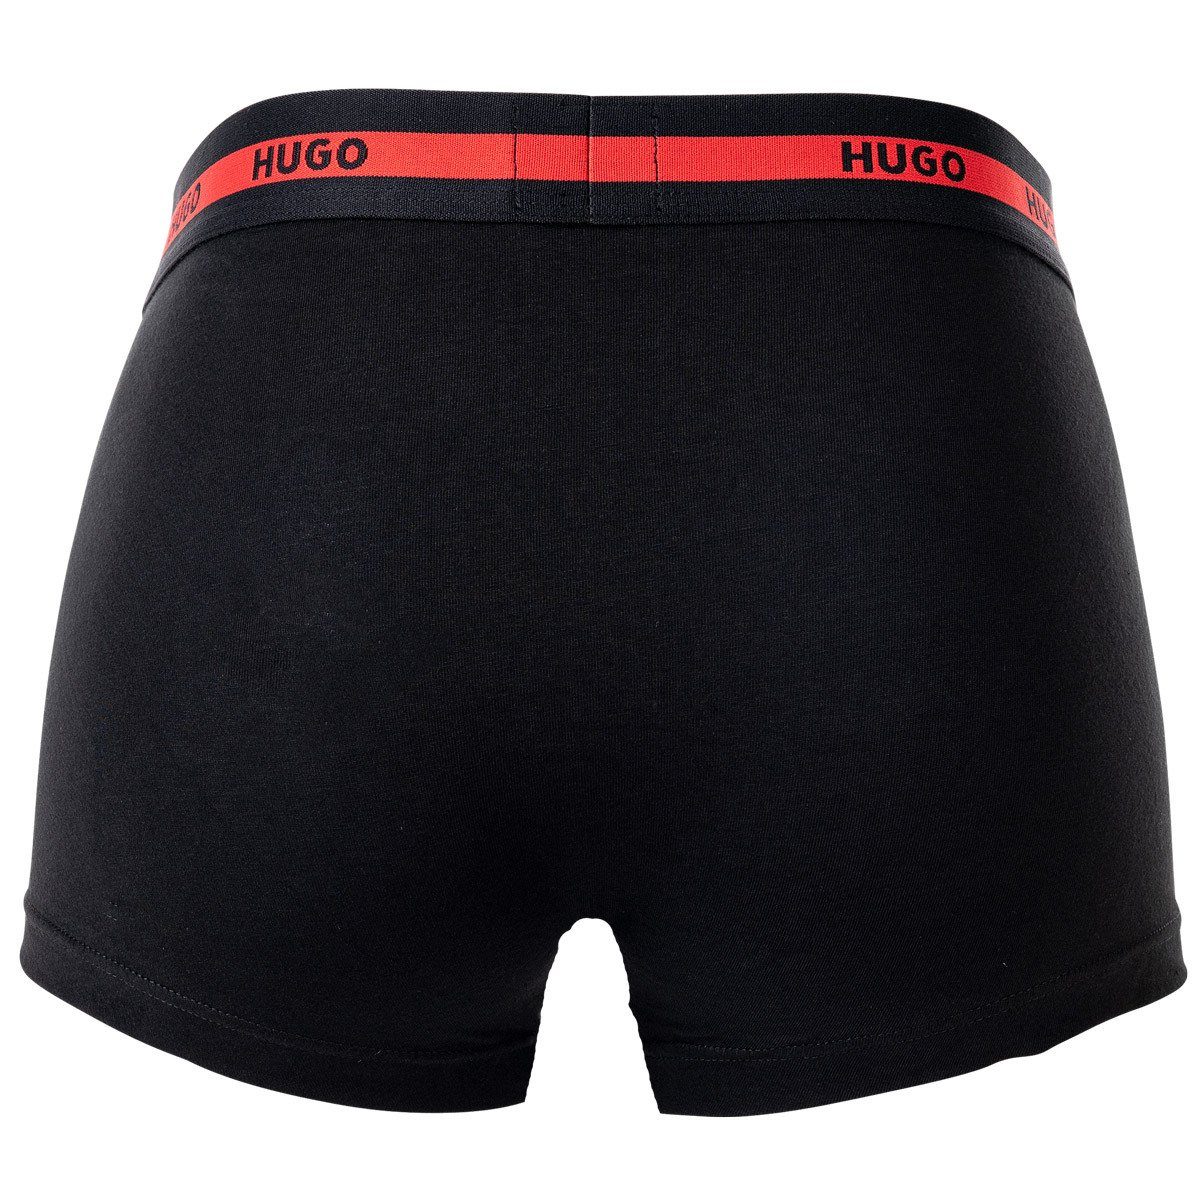 HUGO 2er Twin Shorts, Pack Trunks Rot - Boxer Pack Boxer Herren